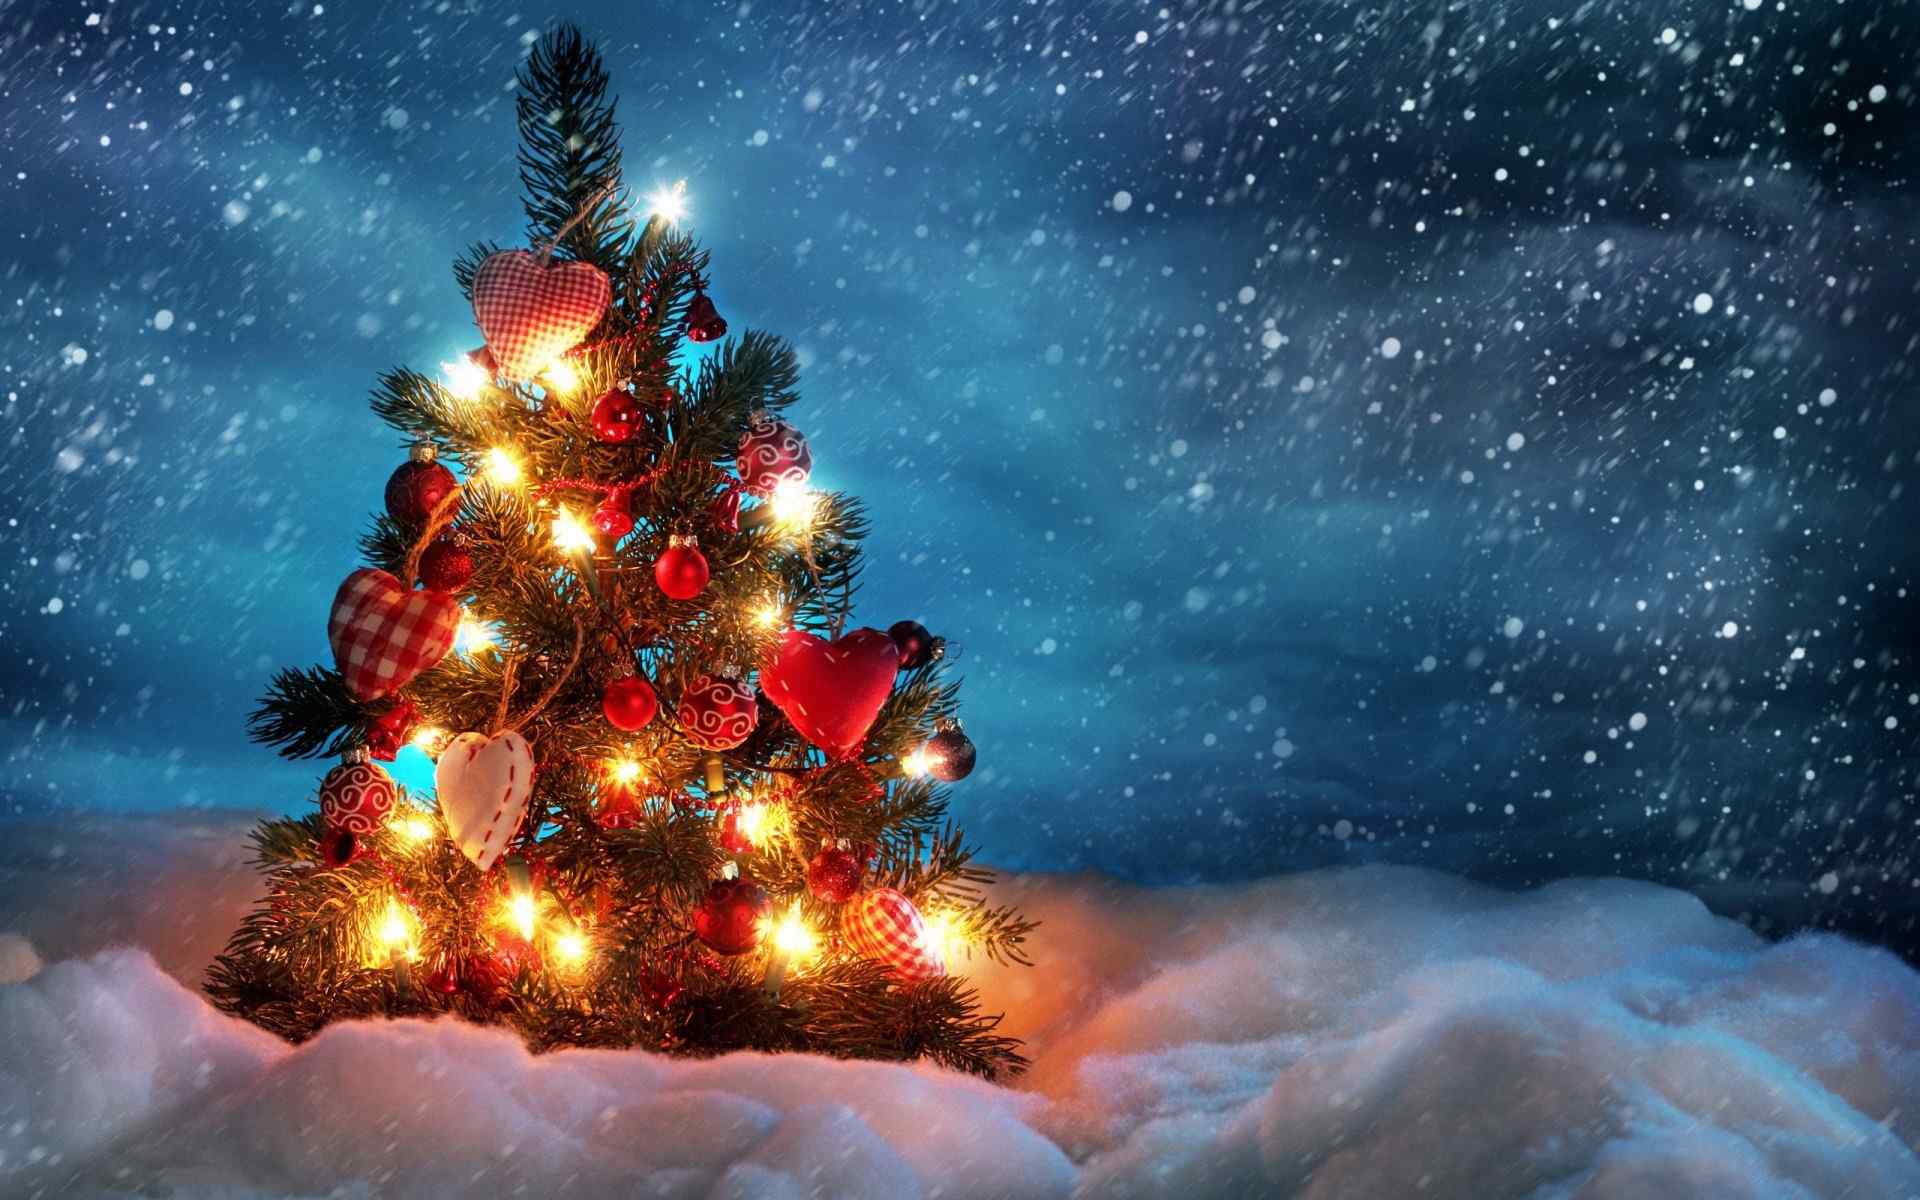 精美圣诞树壁纸